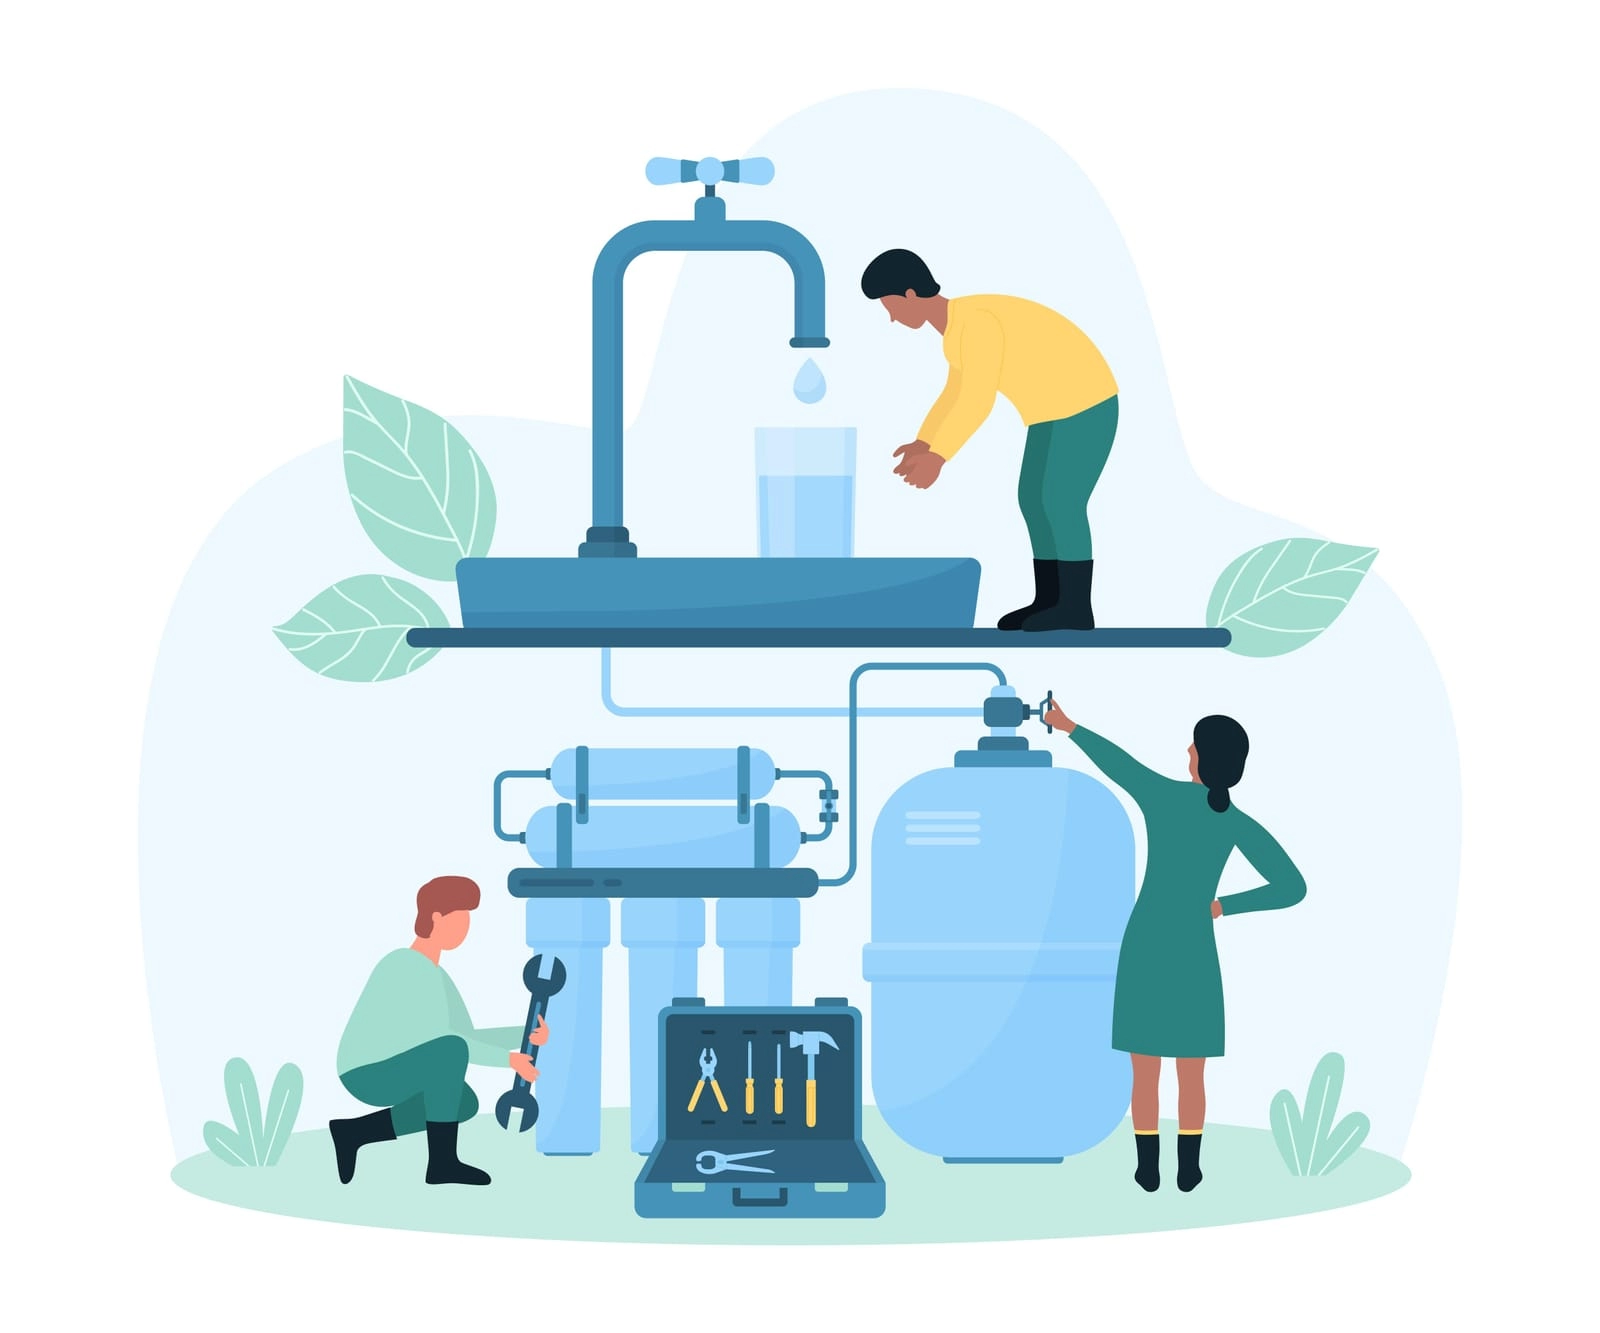 Miért jobb az otthoni ivóvíztisztító készülék használata, mint a műanyag palackos ásványvíz vásárlása?